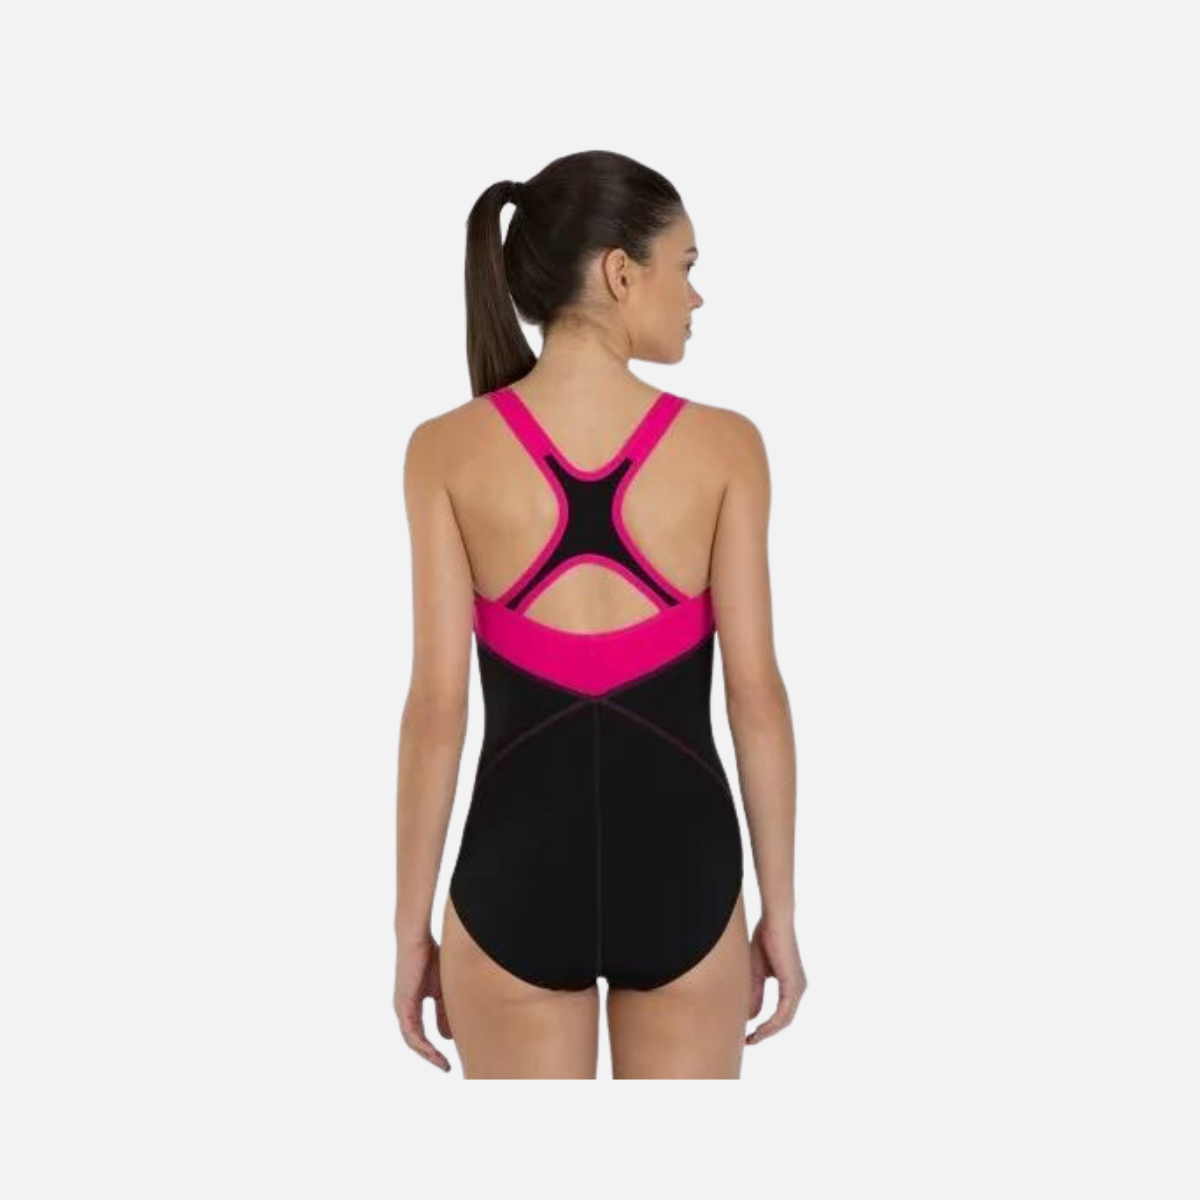 Speedo Fit Kickback Women's Swimsuit -Black/Electric Pink/Lava Red